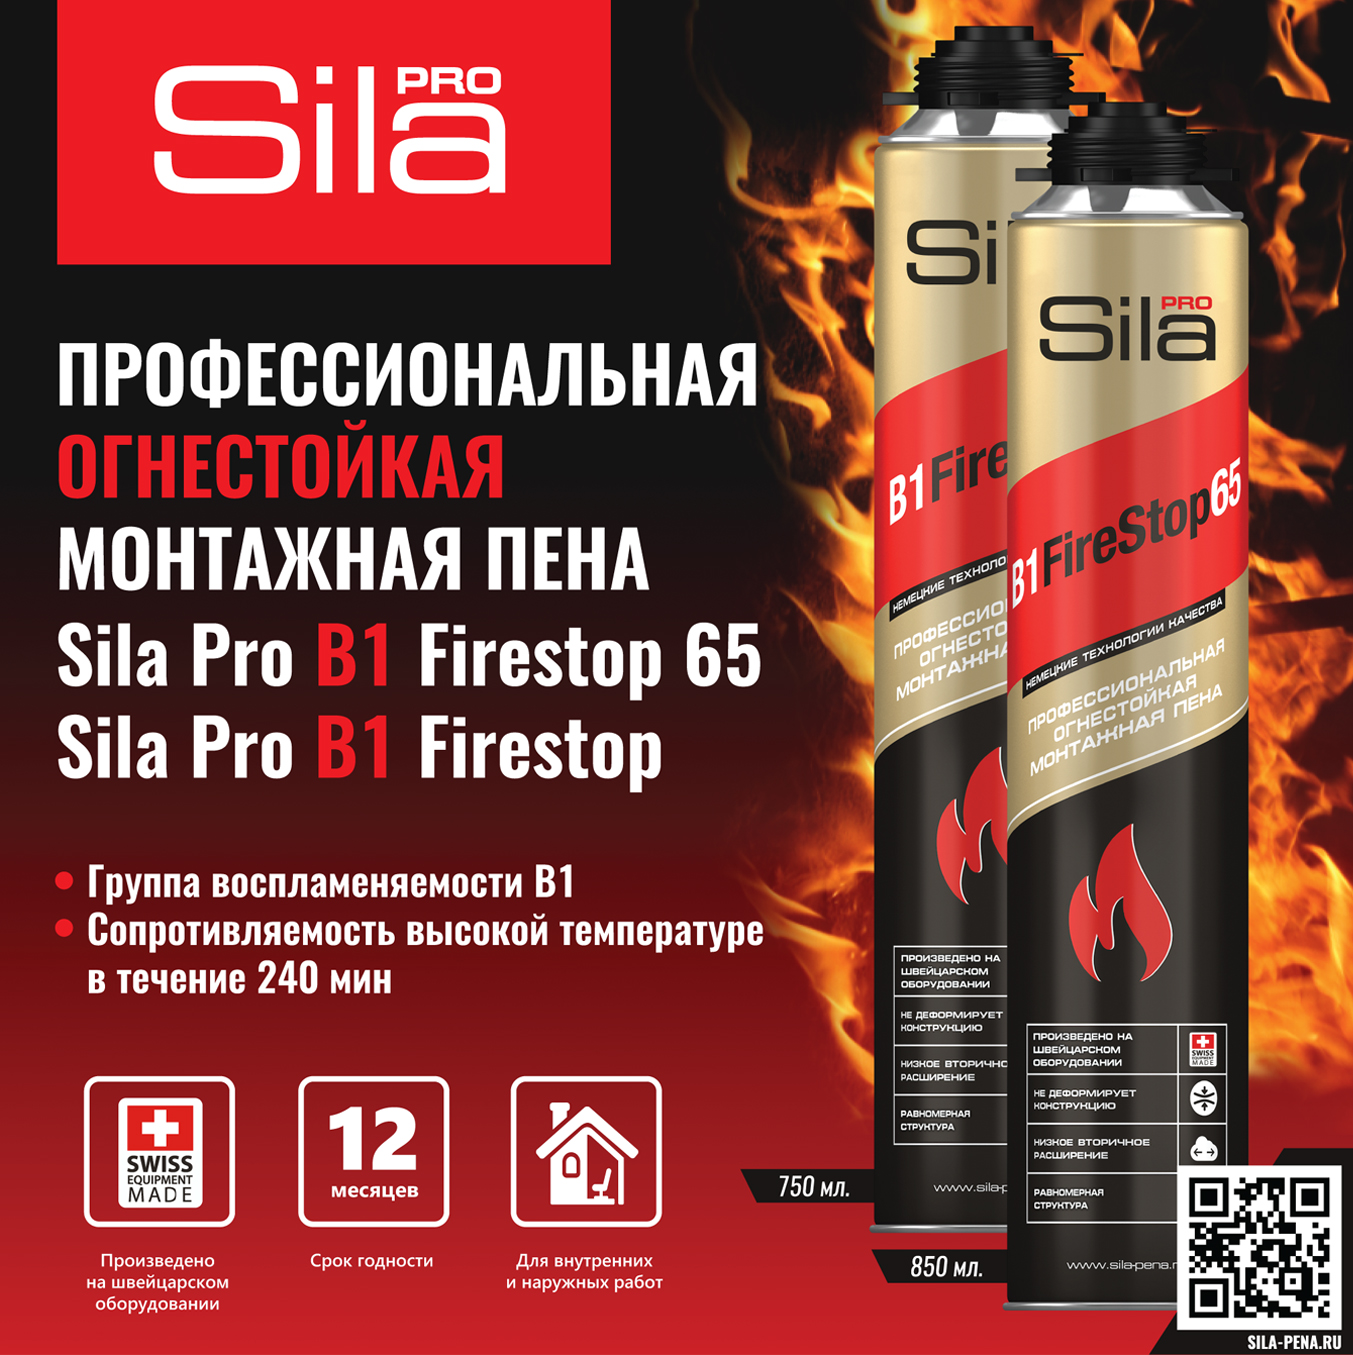 Новинка! Огнестойкая пена Sila Pro B1 Firestop и Sila Pro B1 Firestop 65